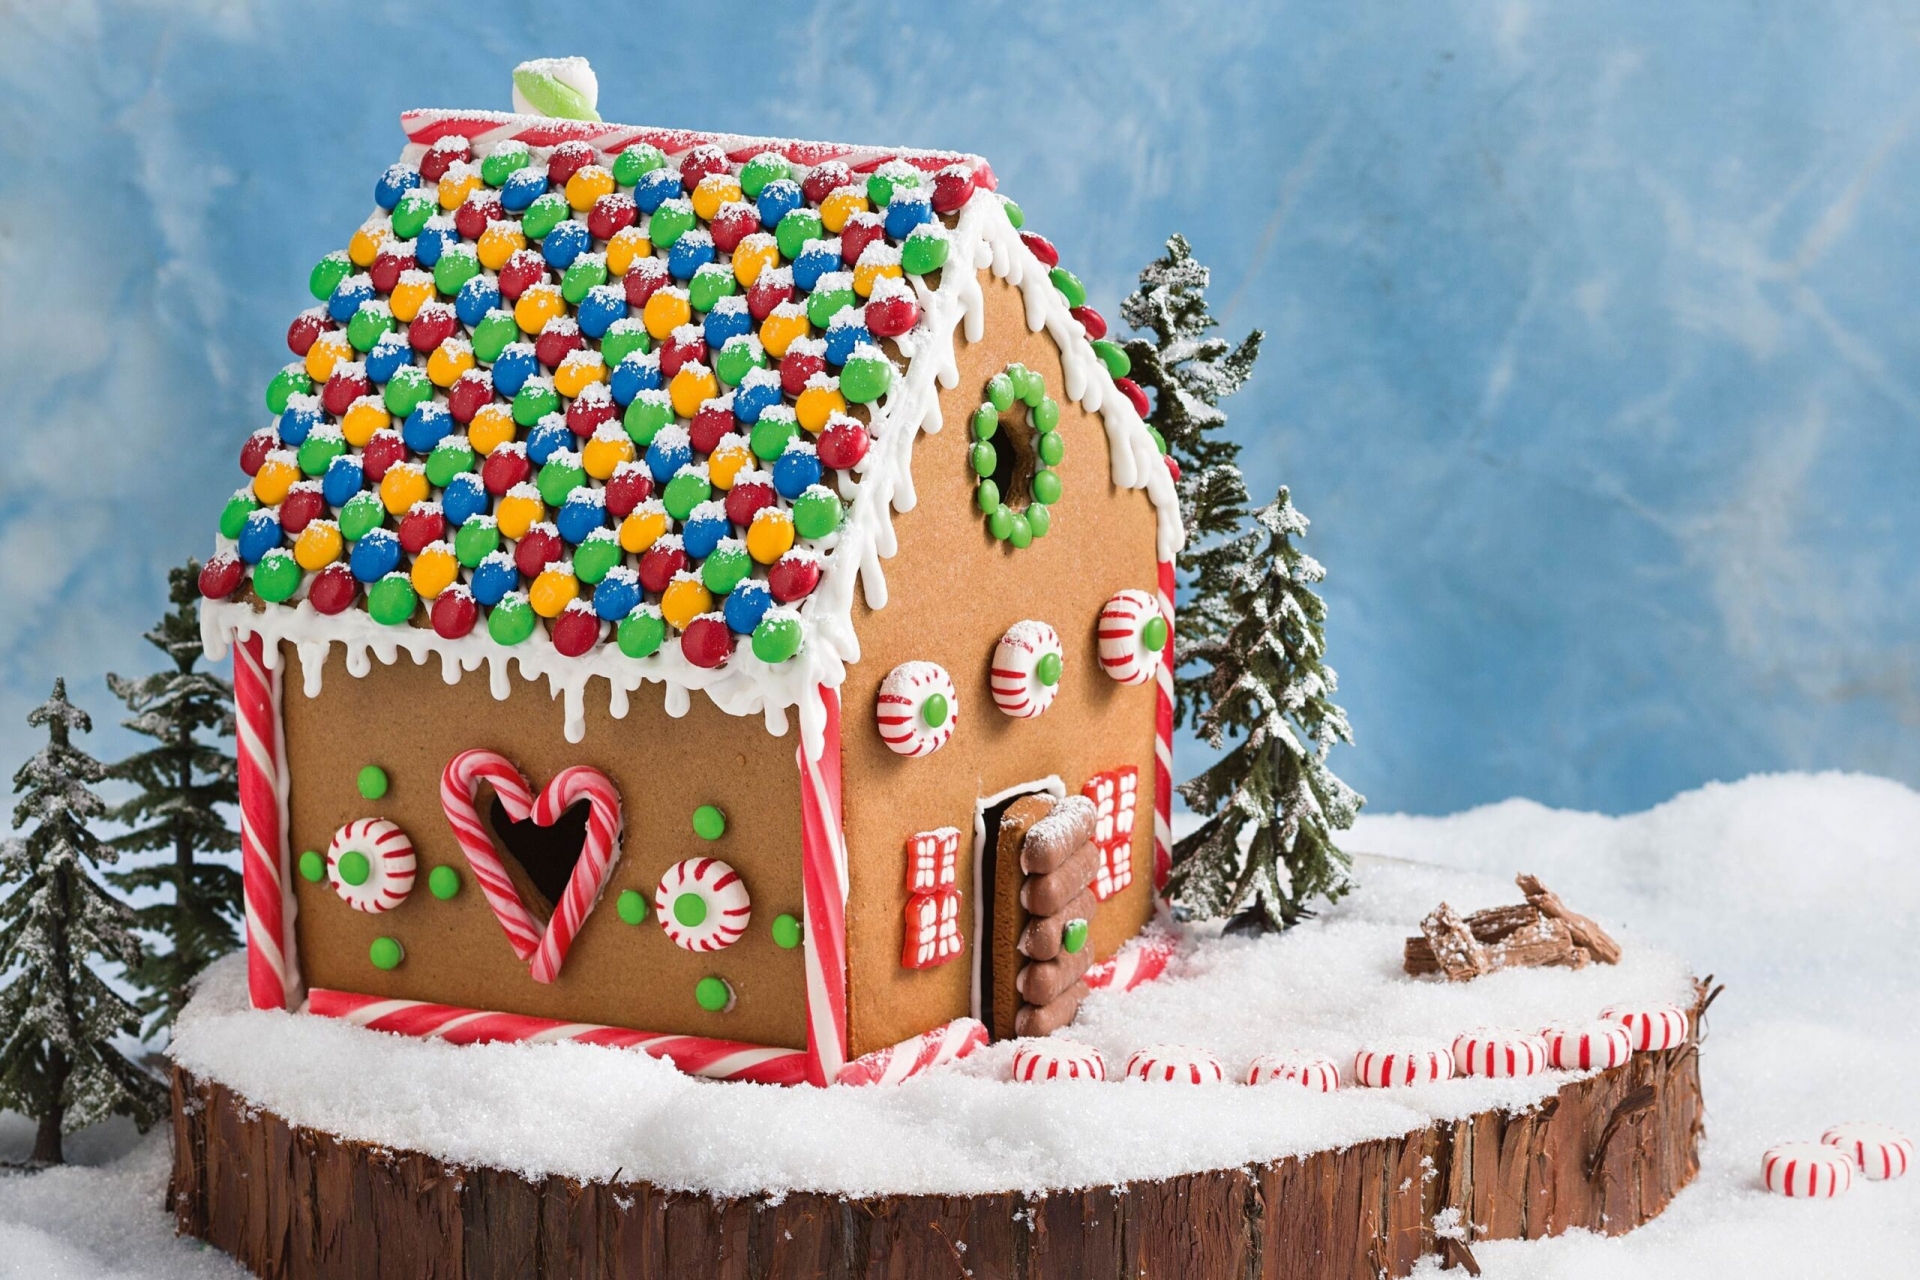 Bánh quy gừng được trang trí thành hình ngôi nhà.